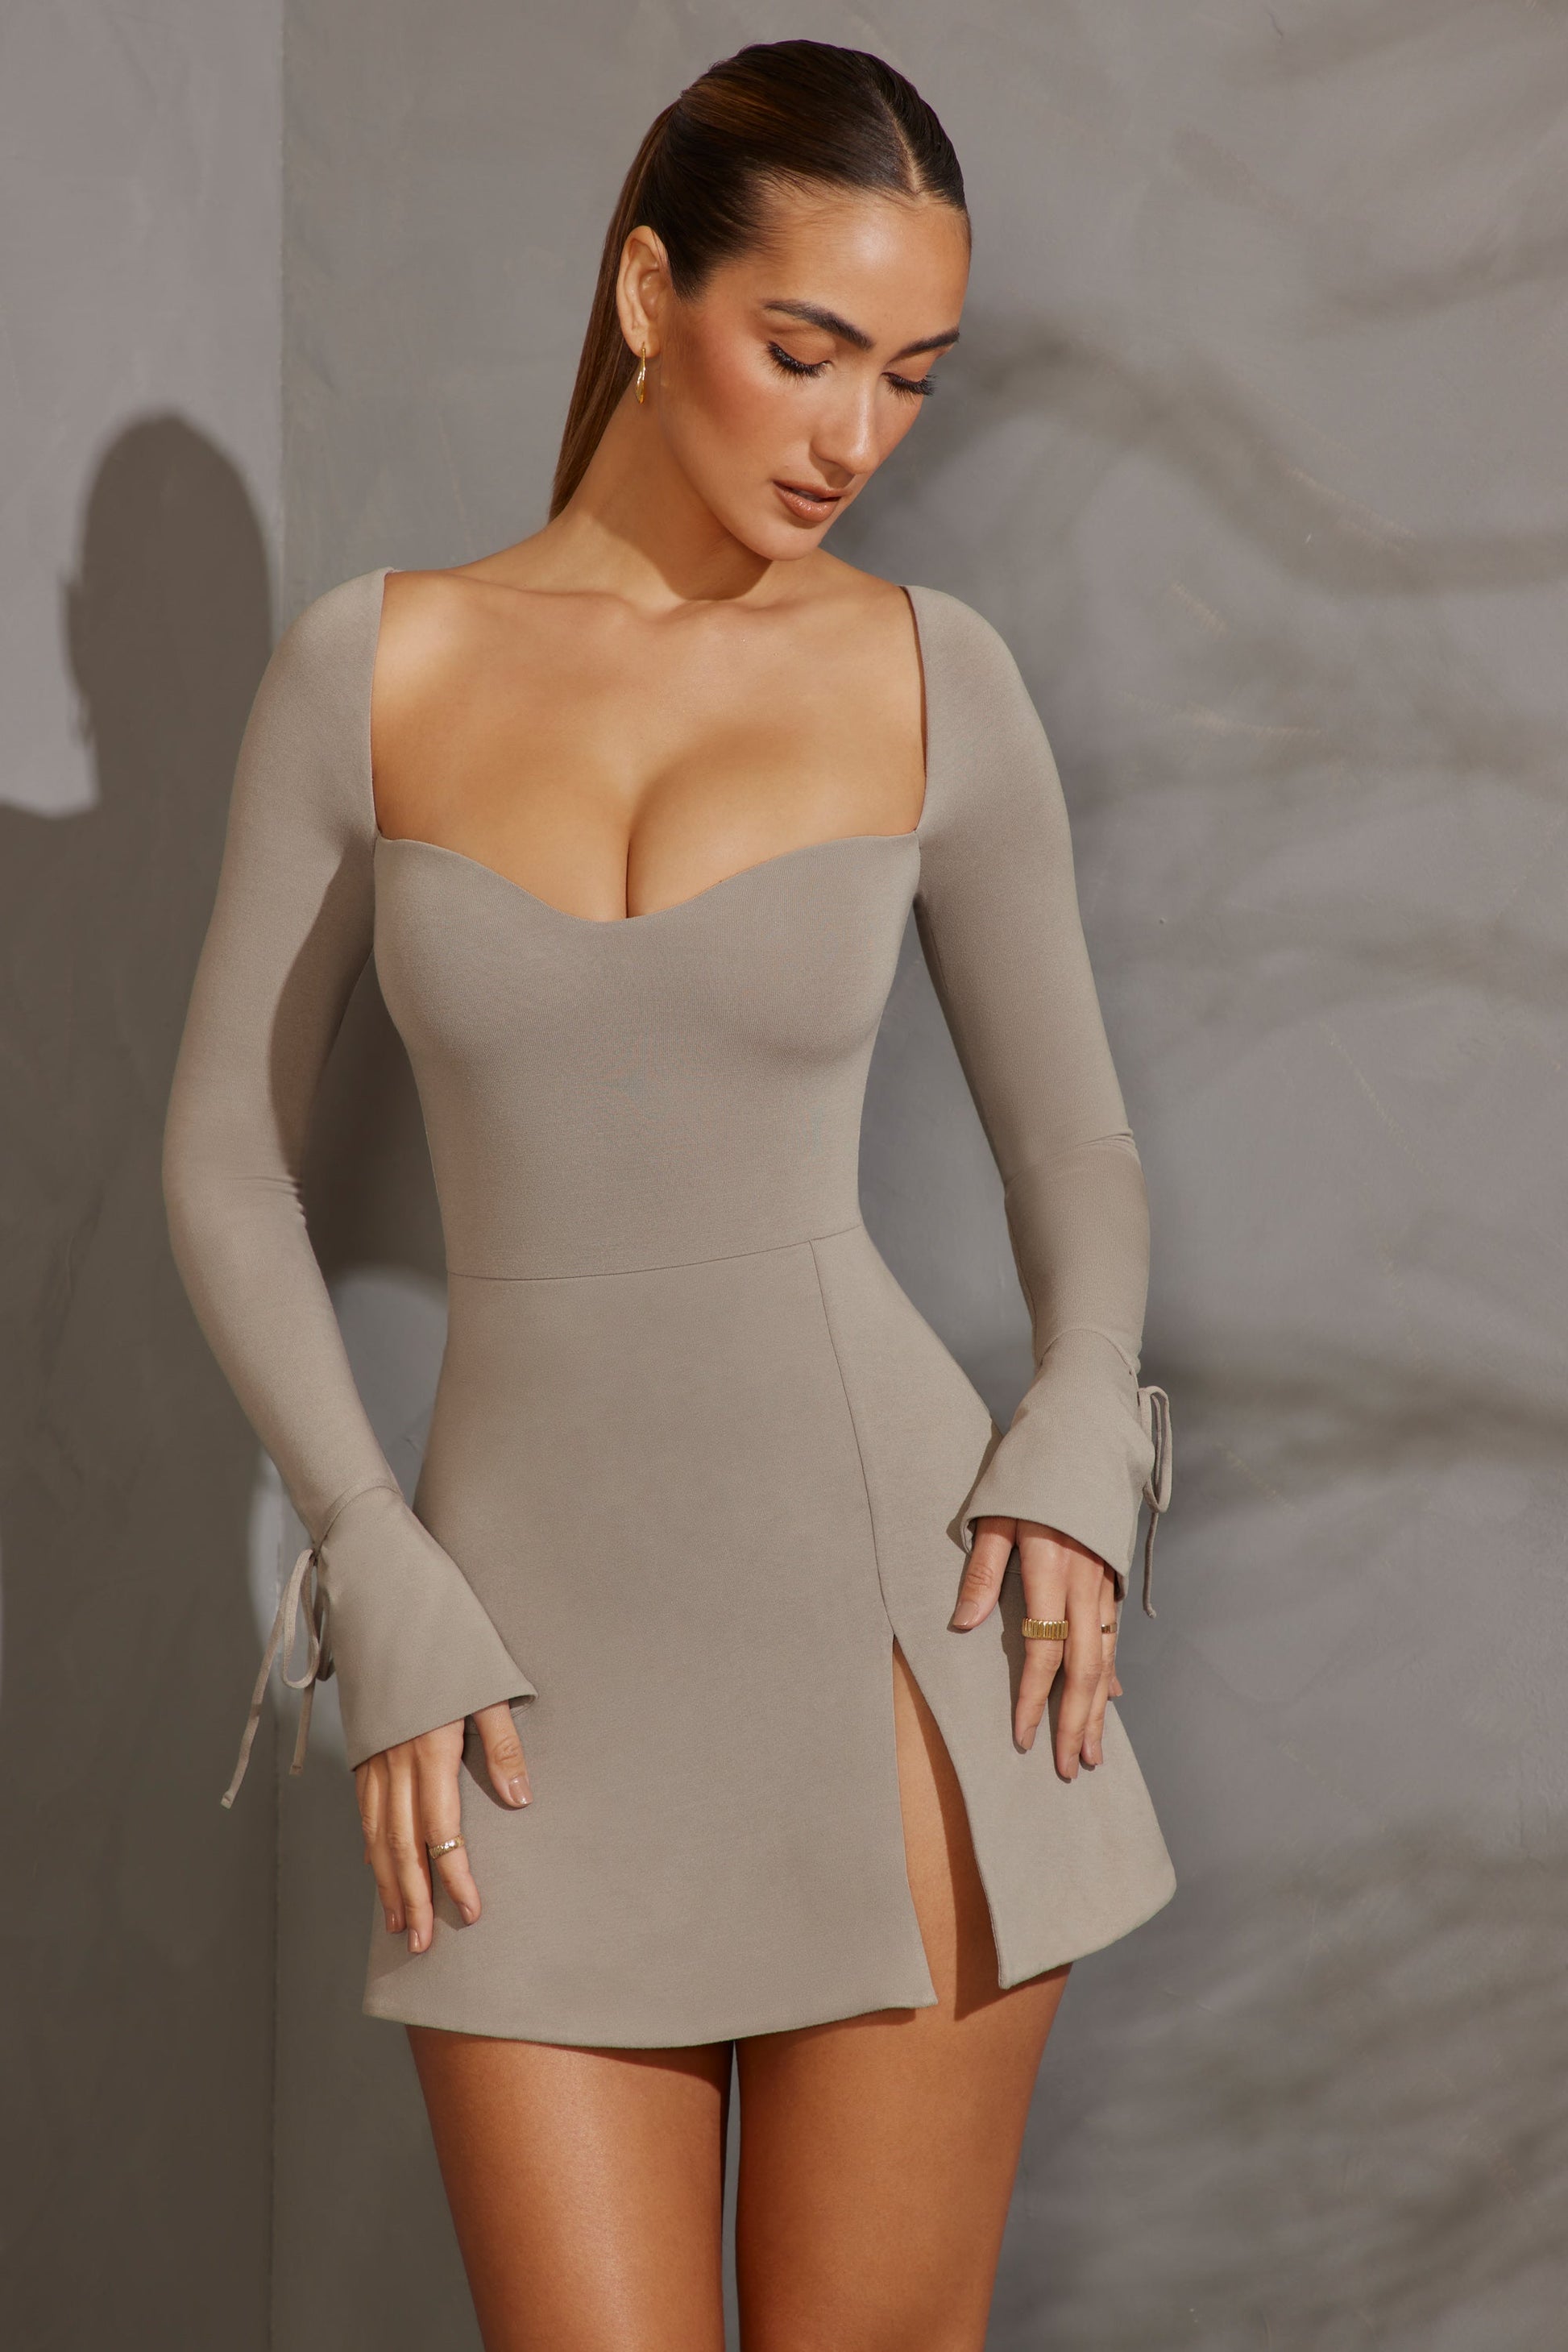 Long Sleeve A-Line Mini Dress